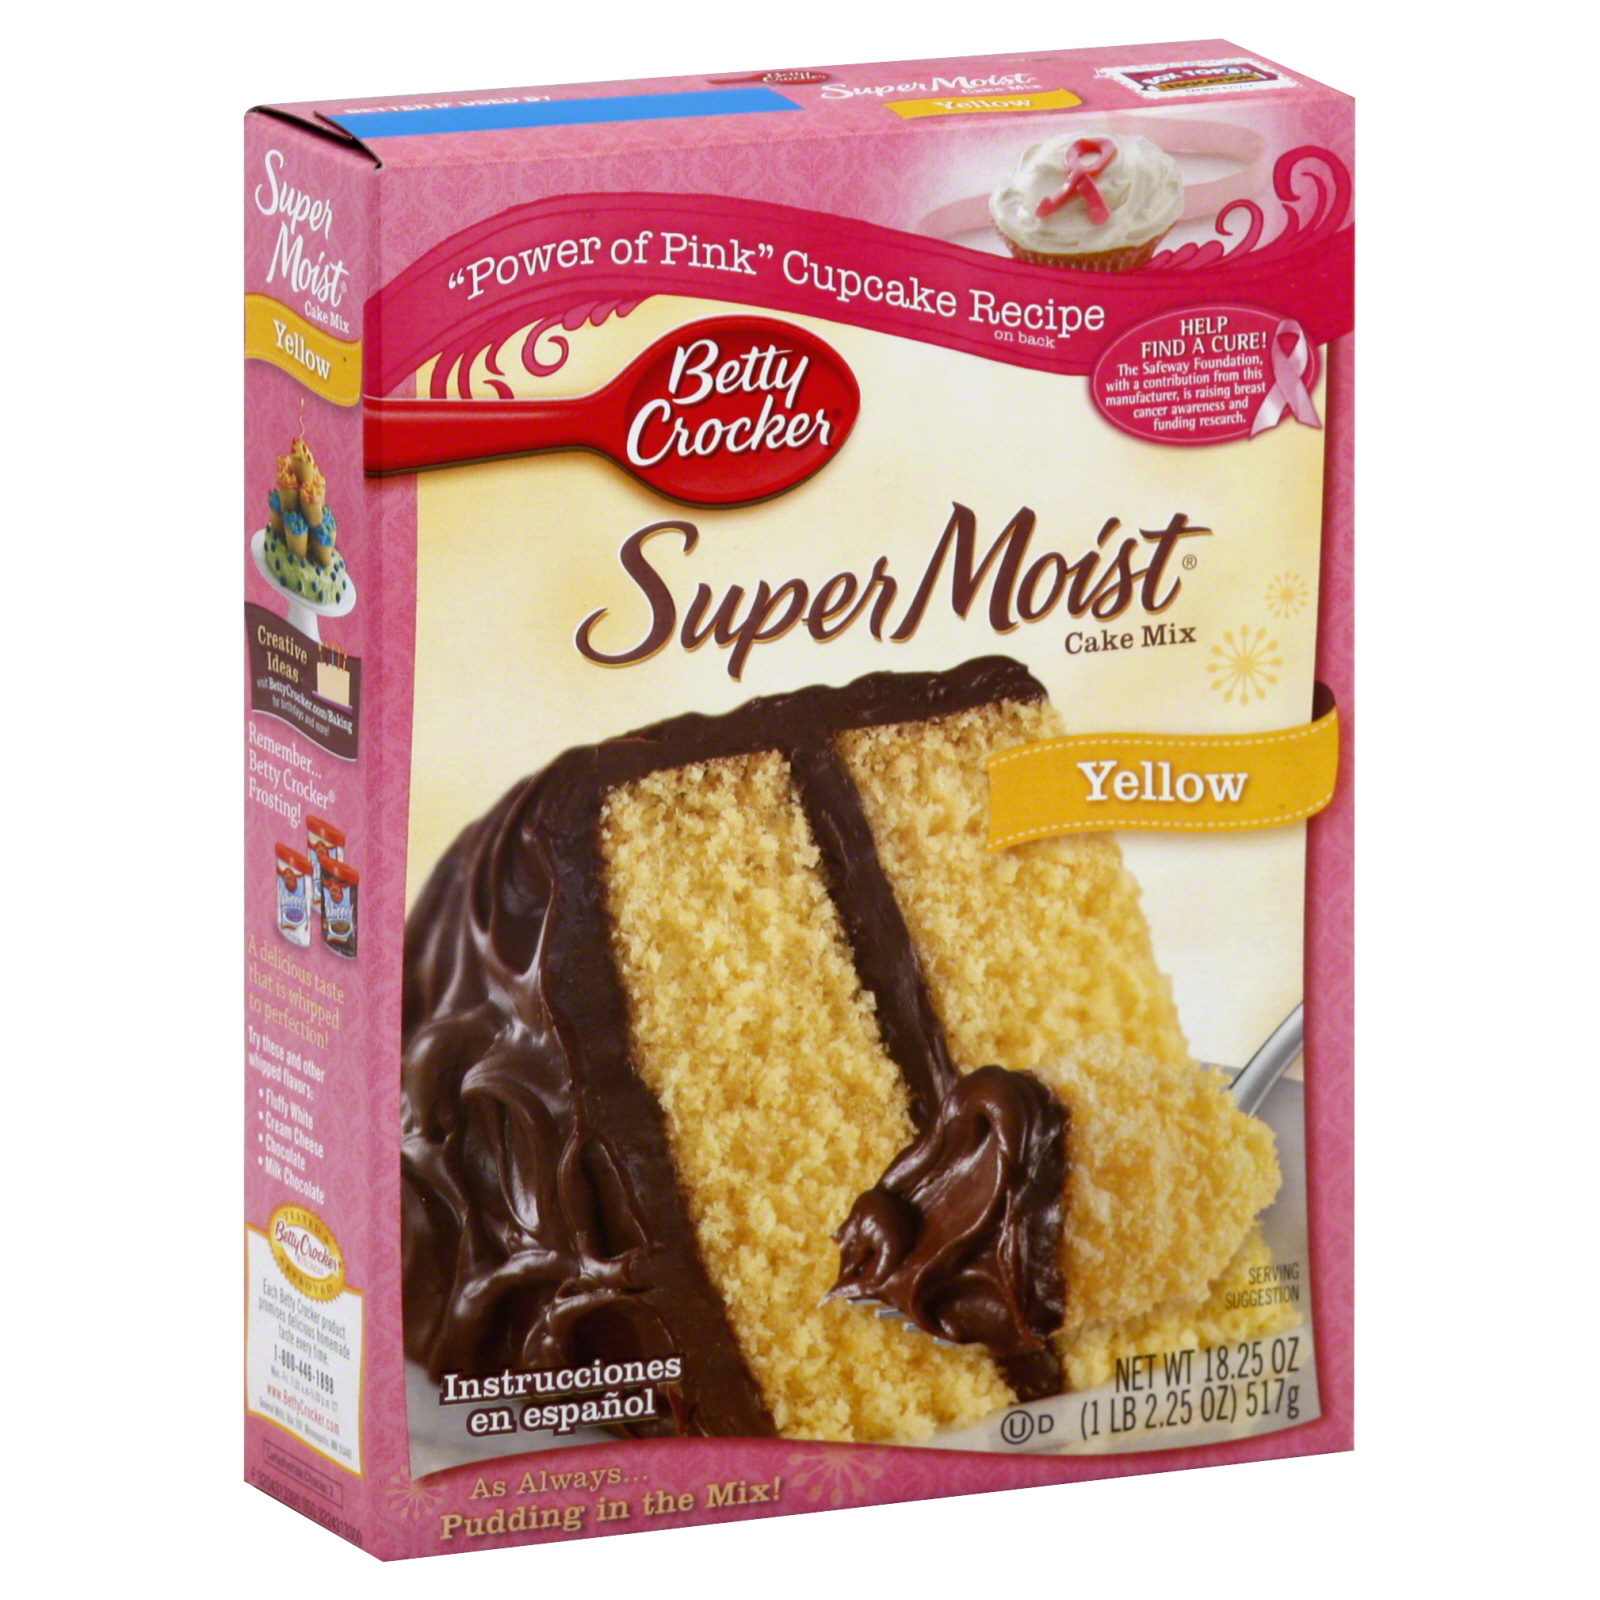 Betty Crocker Super Moist Cake Mix, Yellow, 18.25 oz (1 lb 2.25 oz) 517 g